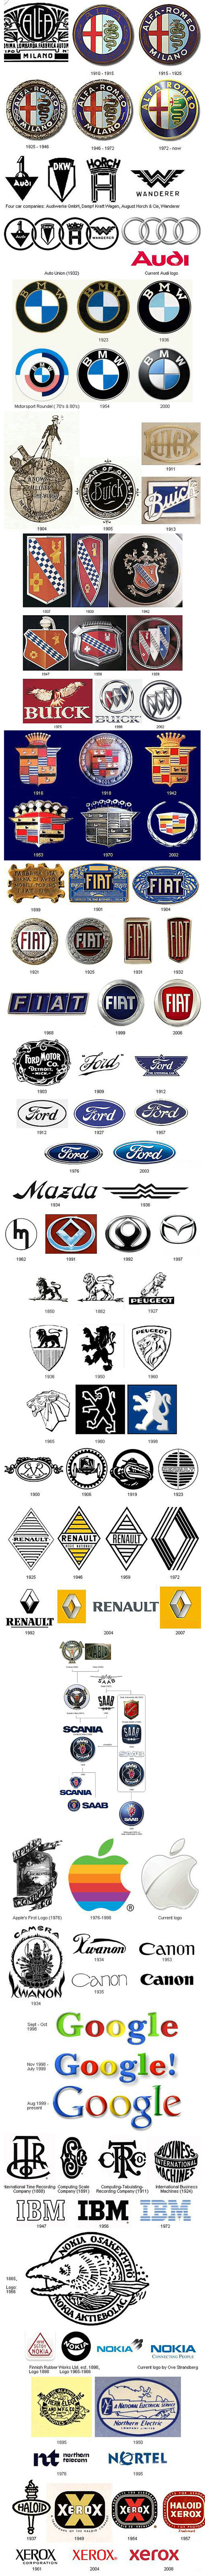 evolution of brands